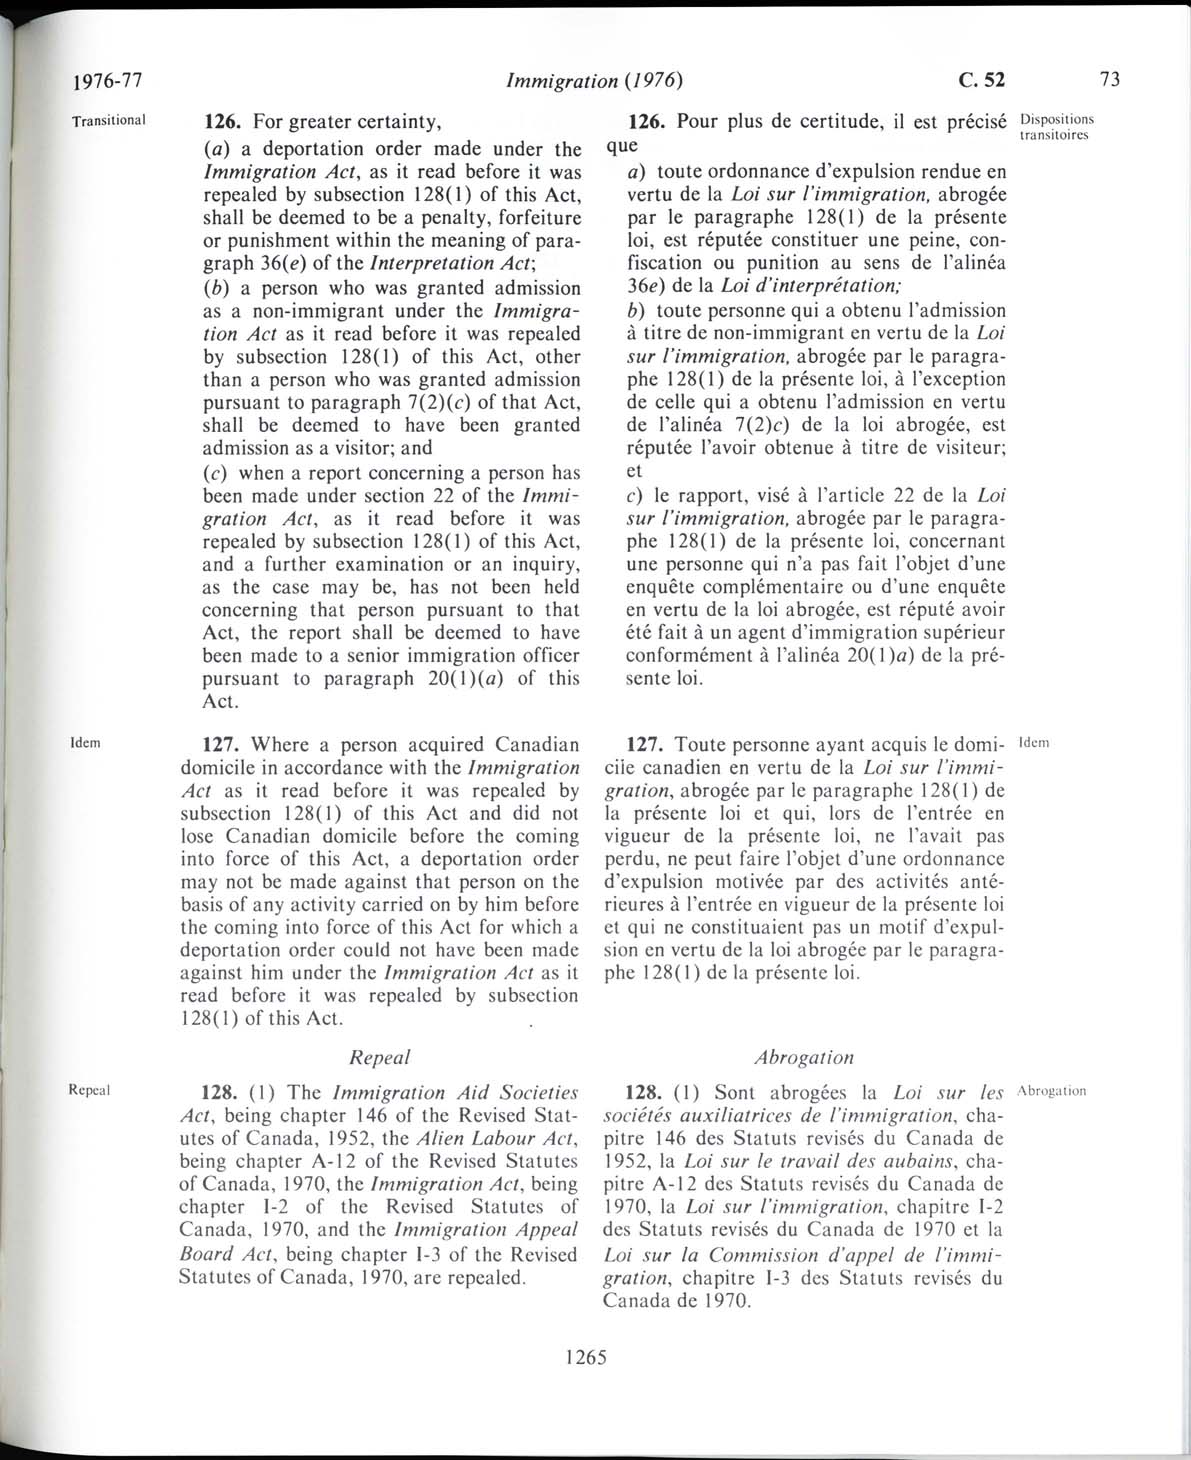 Page 1265 Loi sur l’immigration de 1976